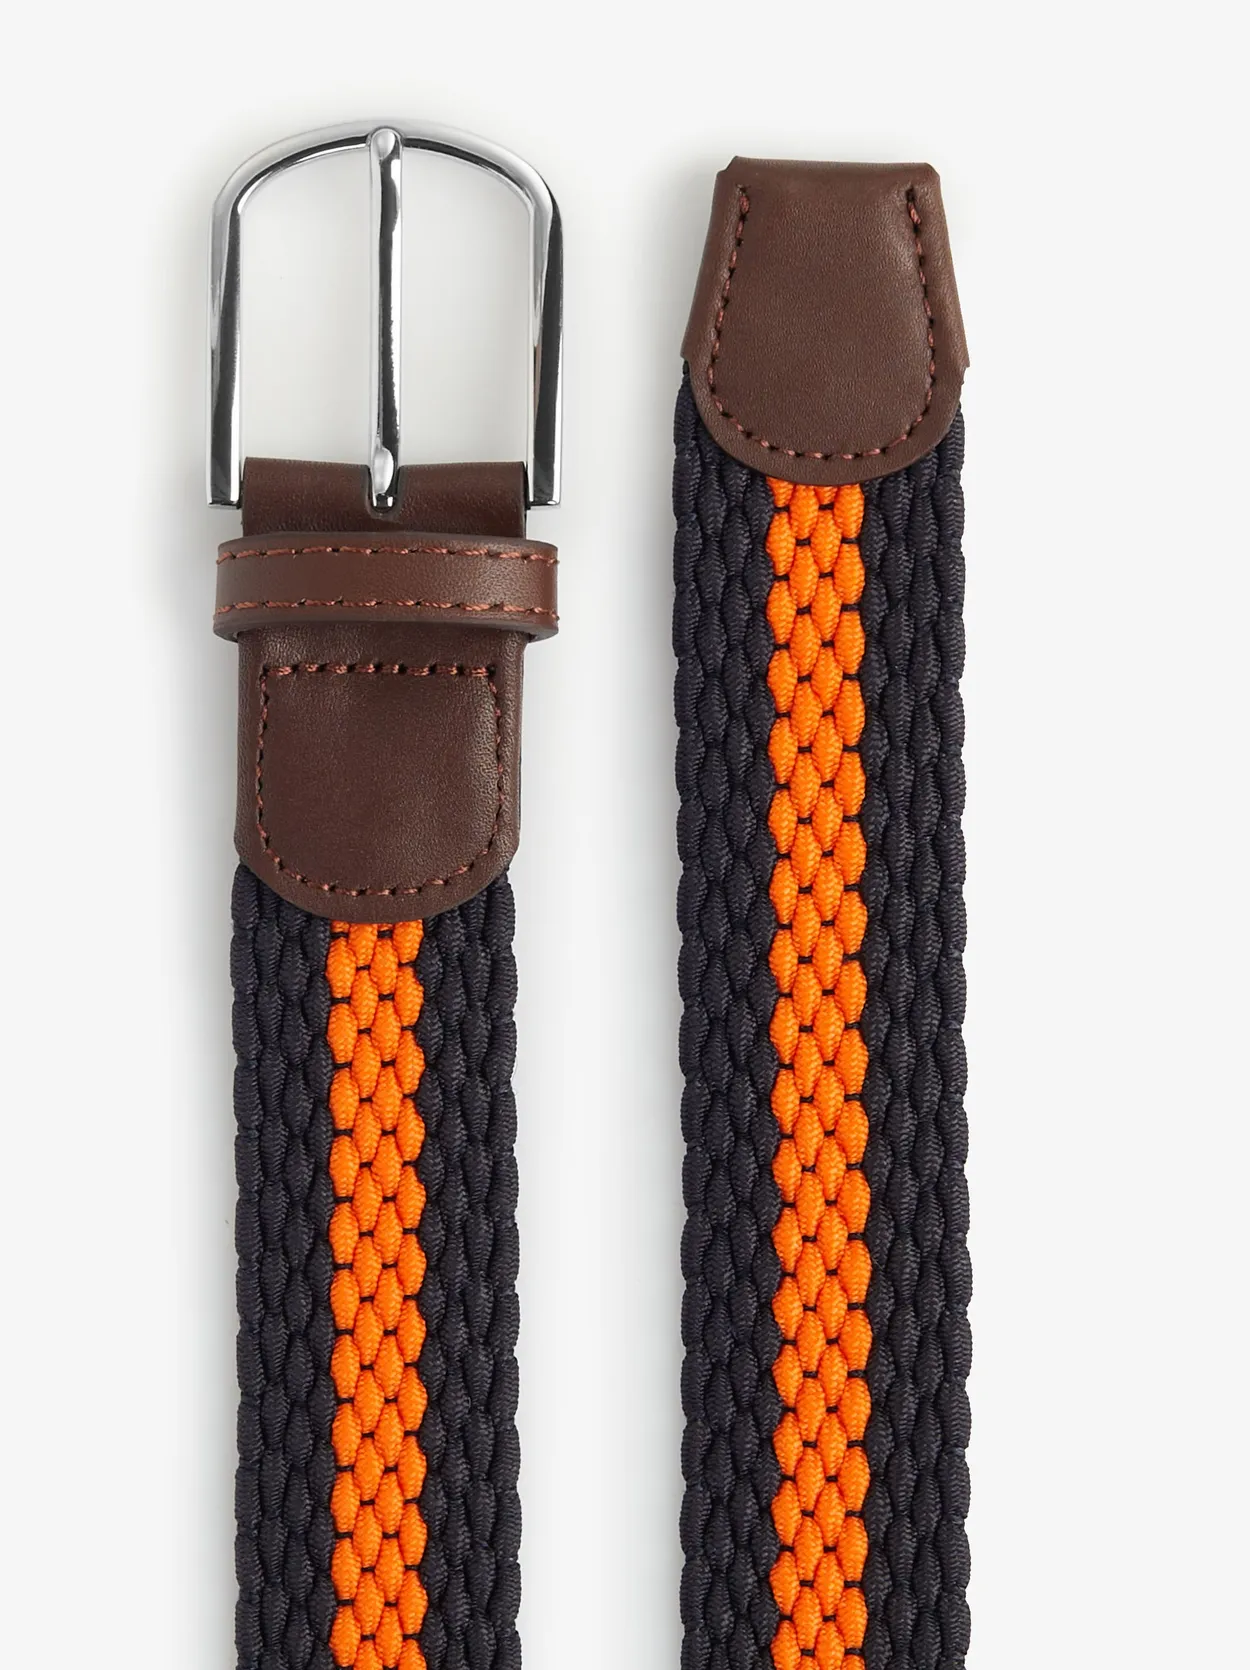 Elastic Braided Belt in Orange - Rob III